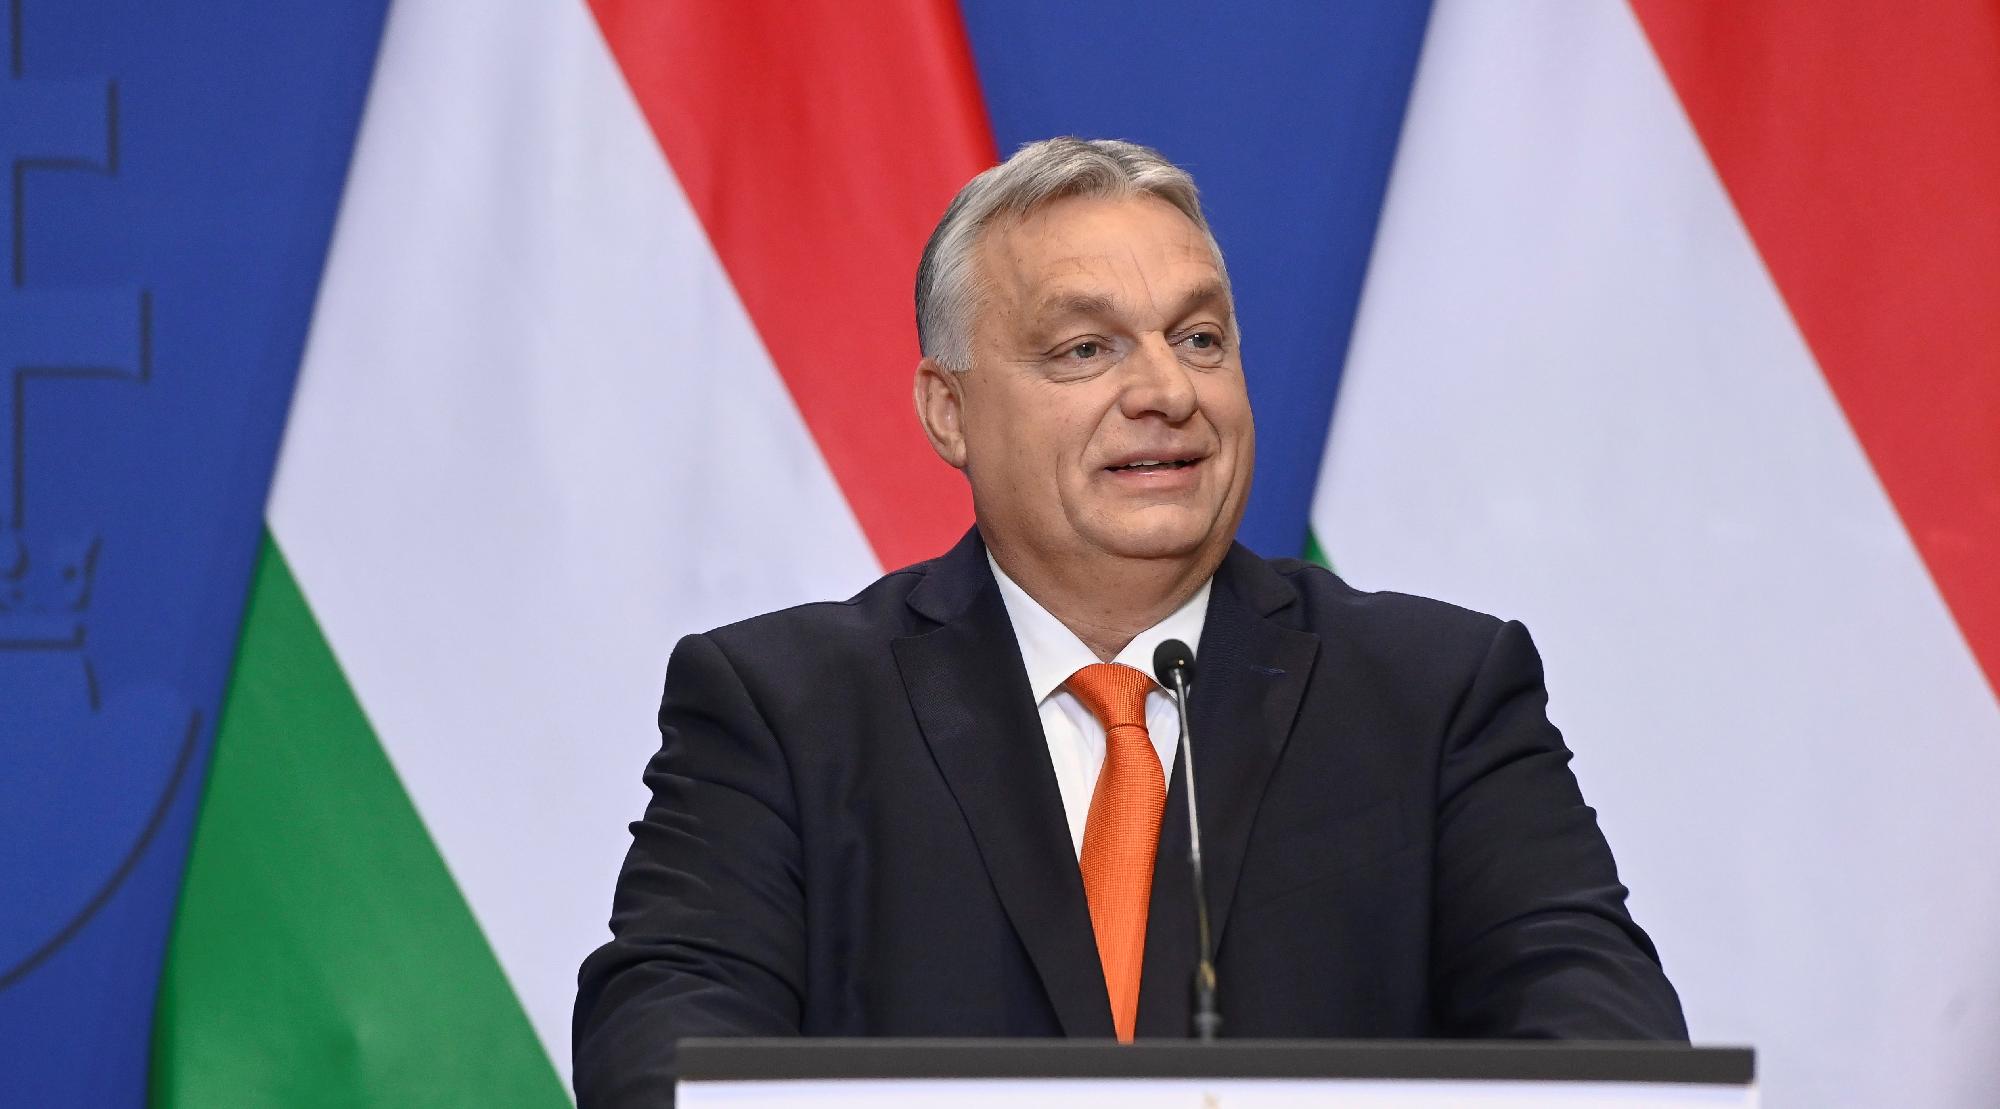 Őrjöngve számolt be a Politico arról, hogy érkezik 10 milliárd euró Magyarországra